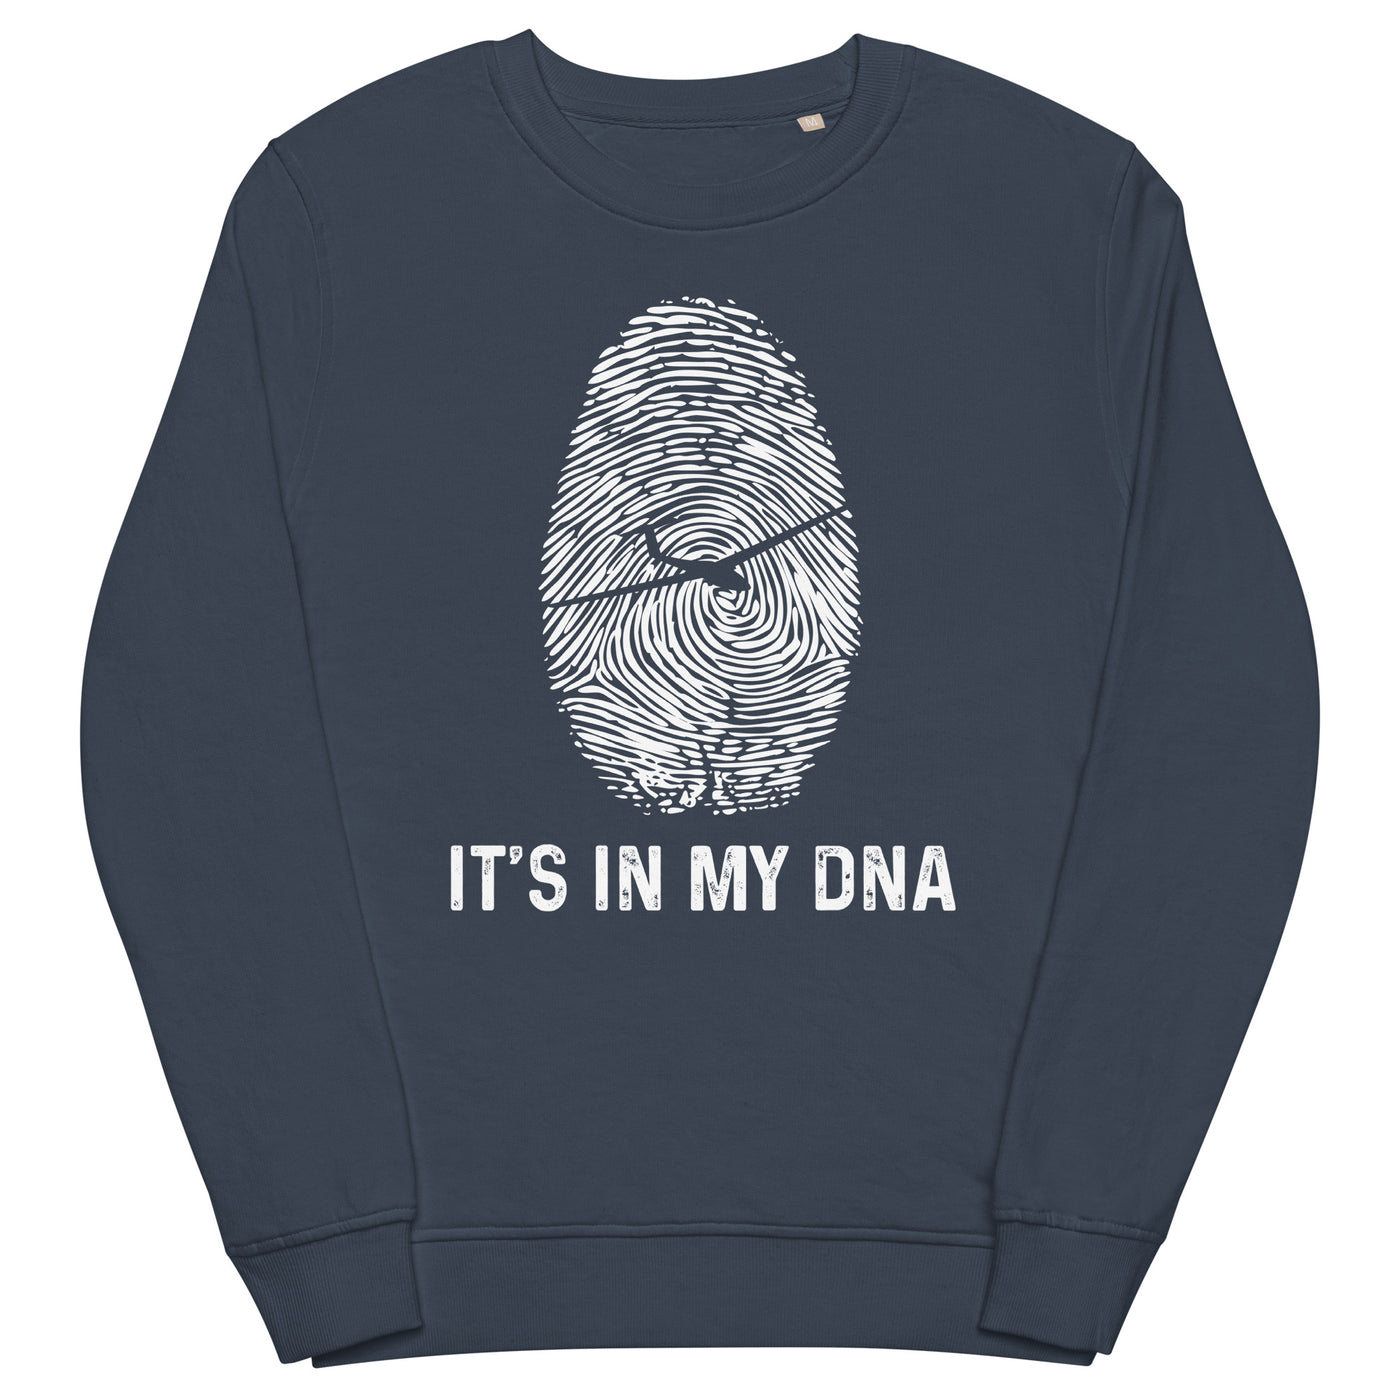 It's In My DNA - Unisex Premium Organic Sweatshirt berge xxx yyy zzz French Navy